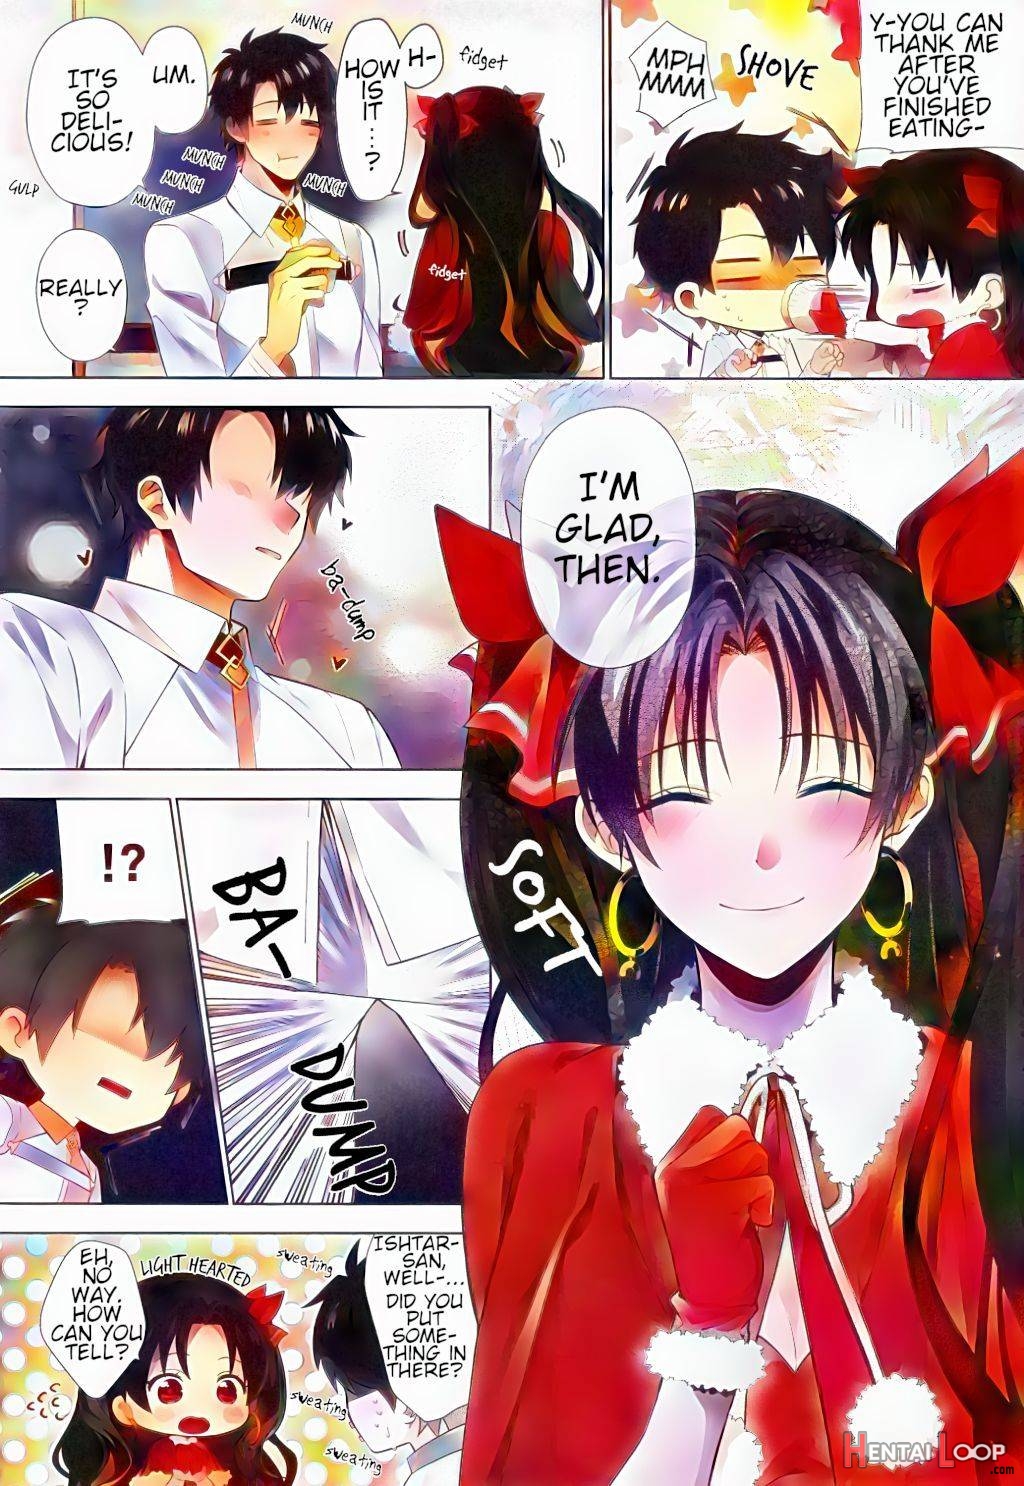 Kimi to Seinaru Yoru ni – Colorized page 3